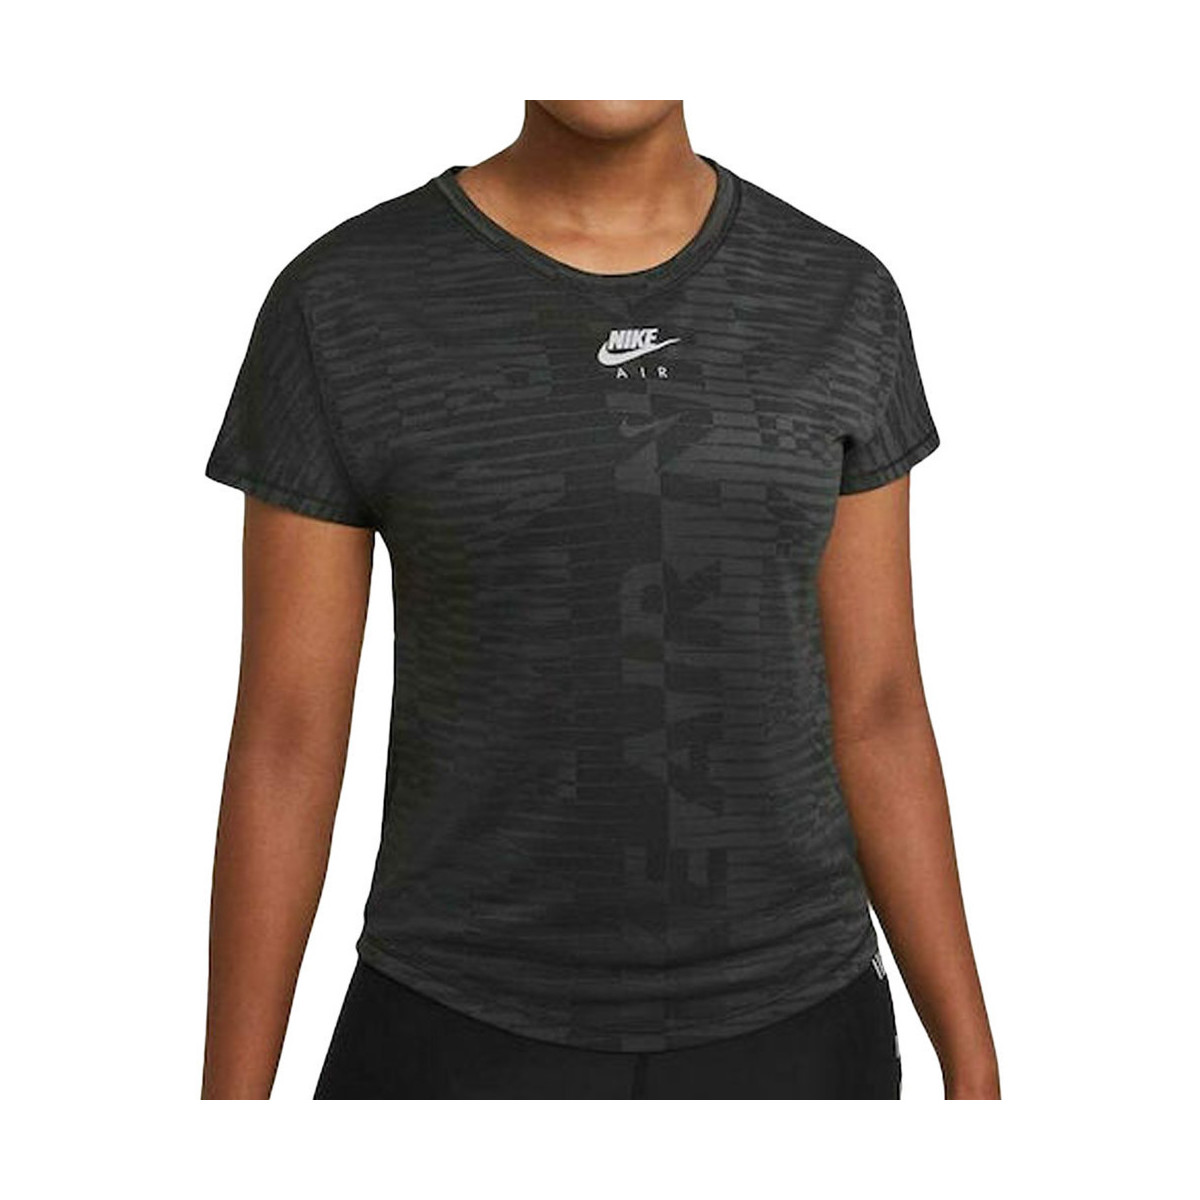 Vêtements Femme T-shirts manches courtes Nike CZ9154-010 Noir